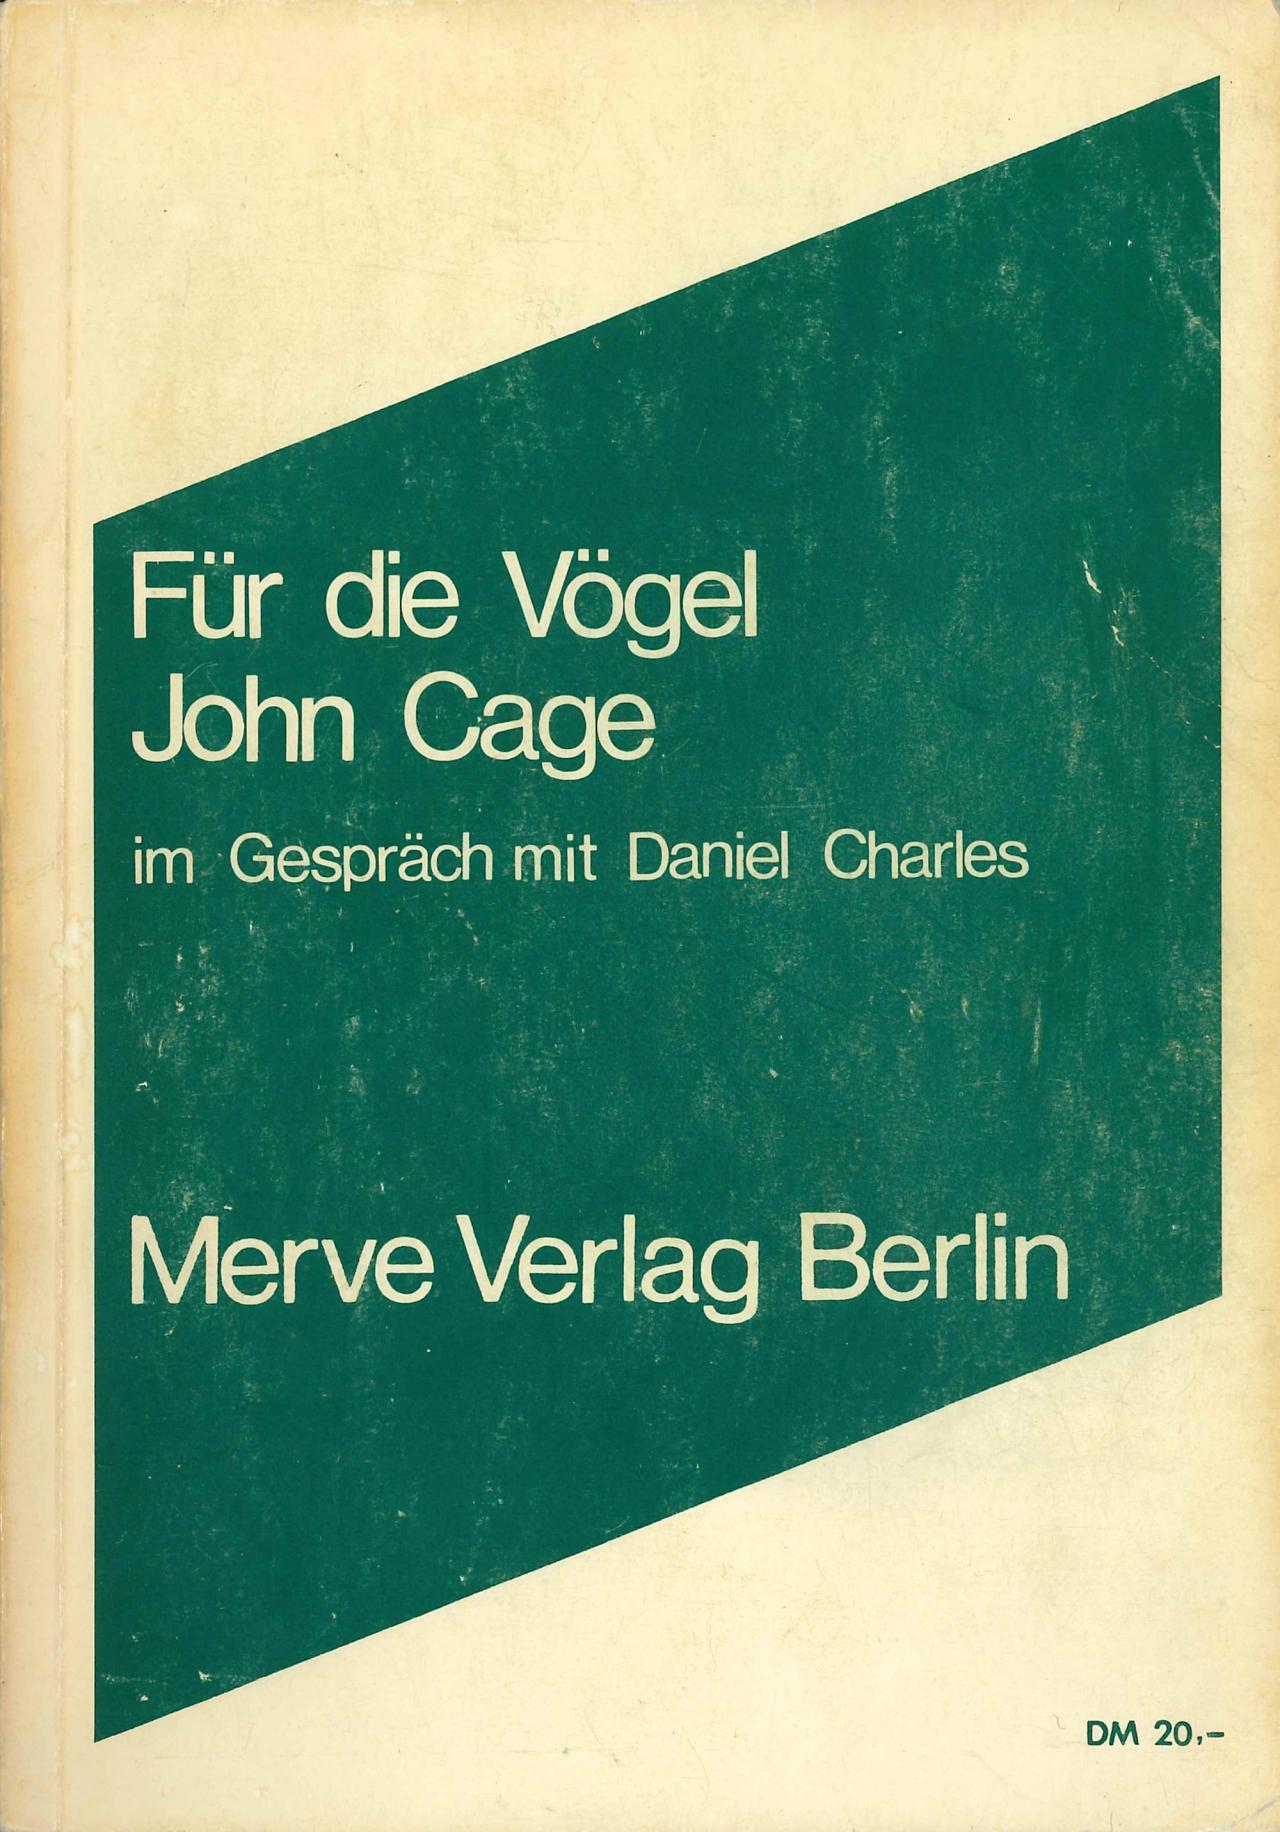 John Cage: Für die Vögel, Berlin 1984.